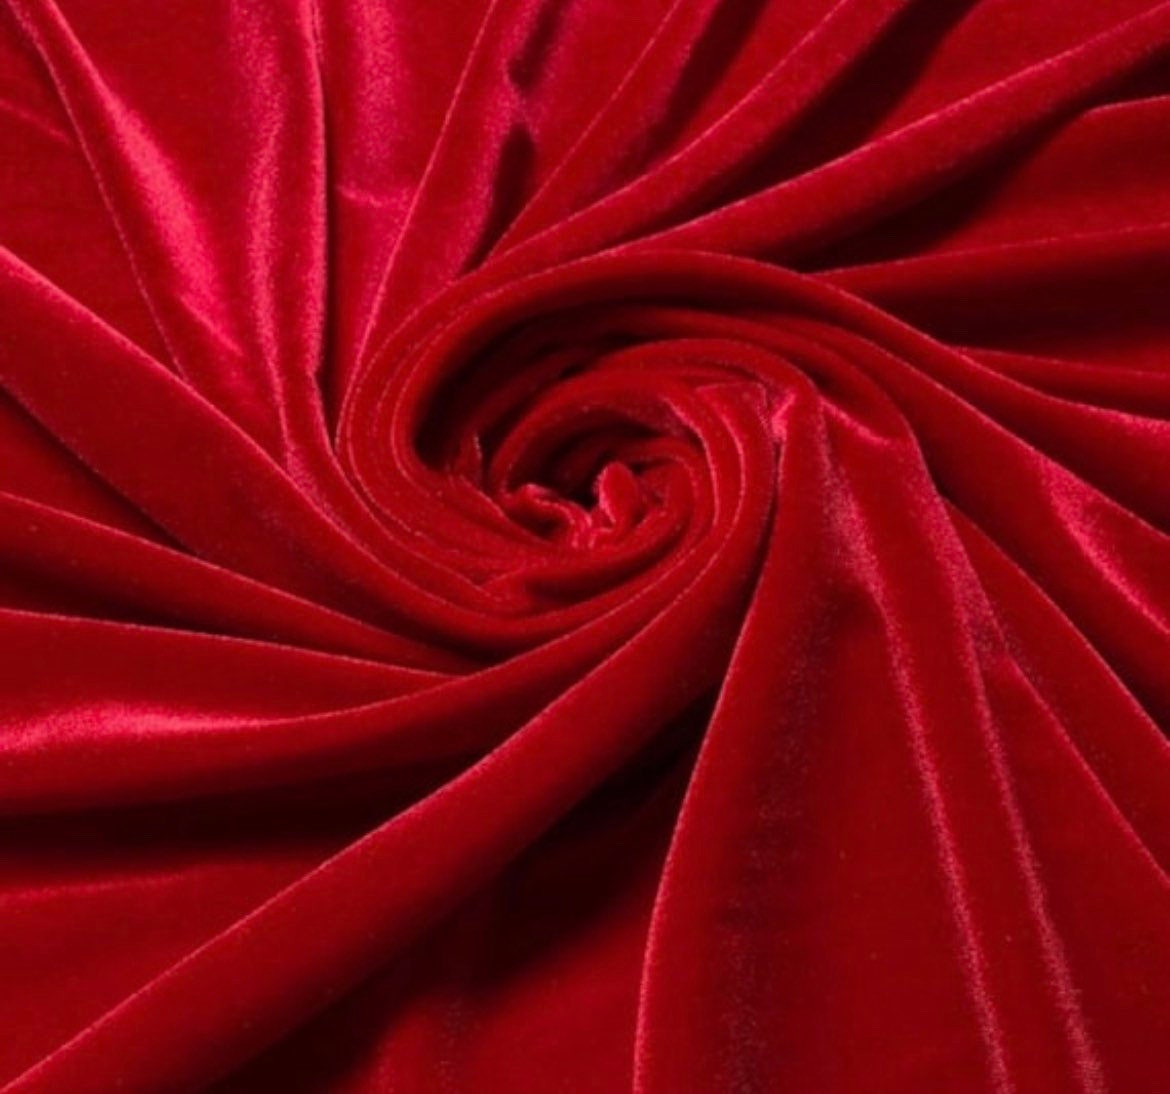 RED WINE Silk Velvet Fabric